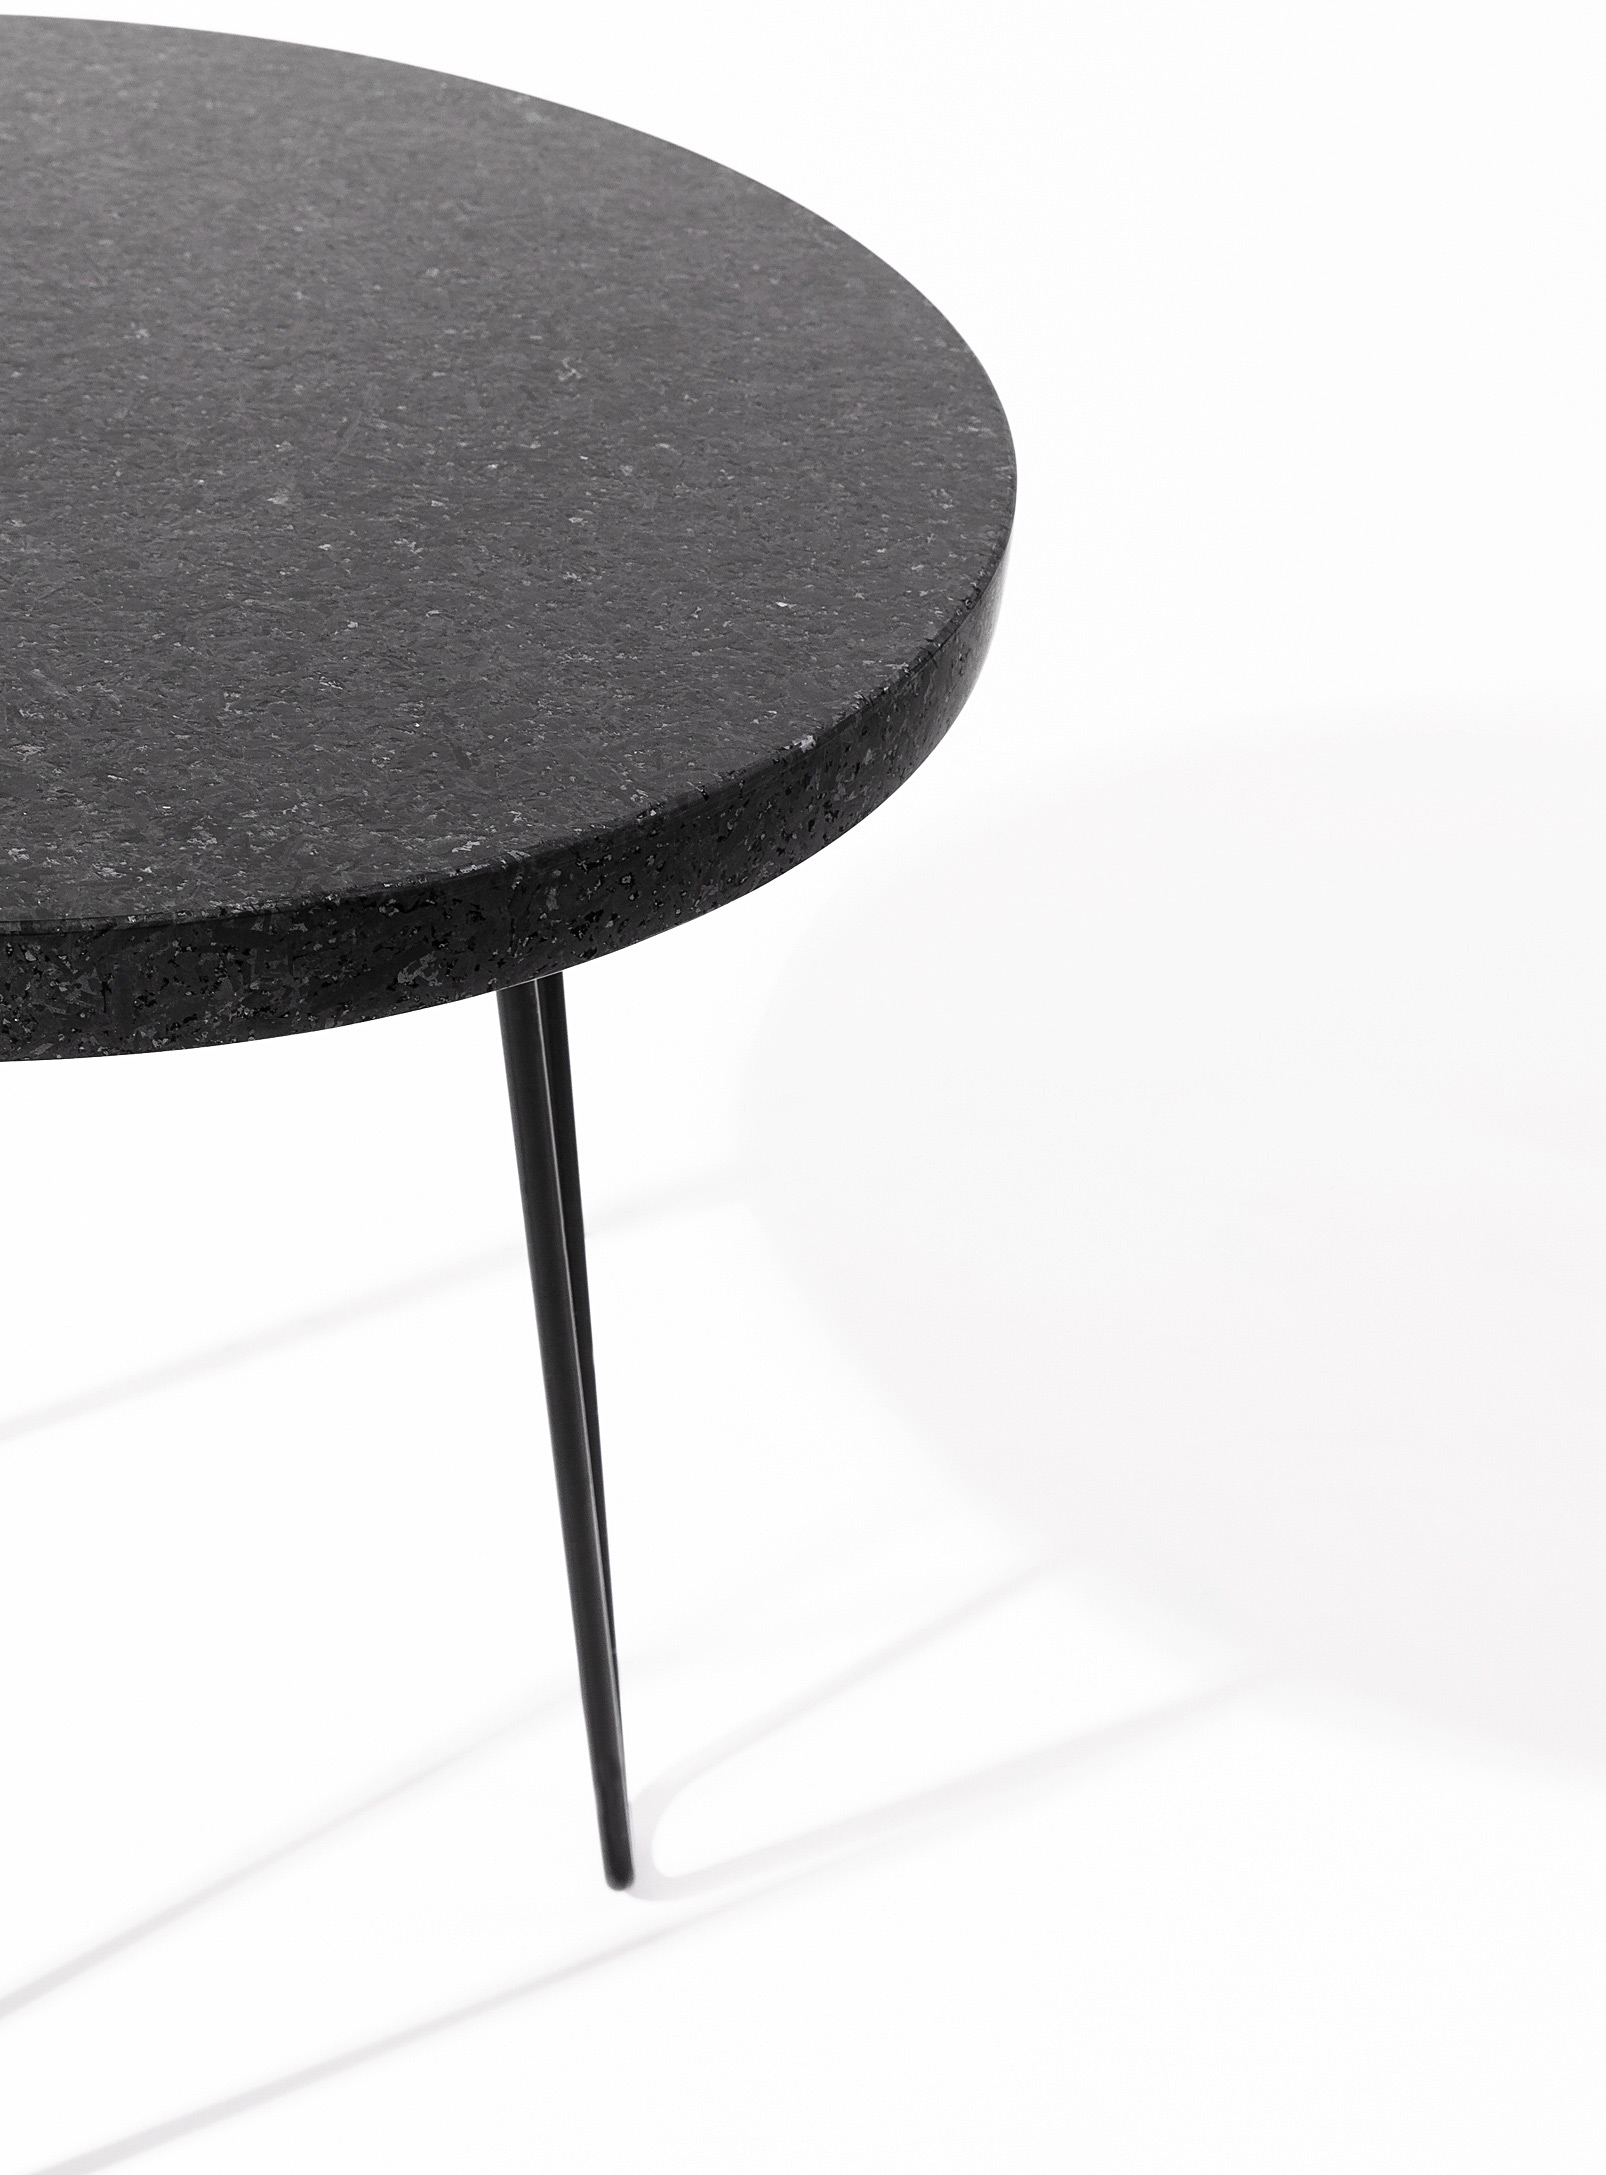 Atelier Bussière - La table d'appoint en granite noir du Québec